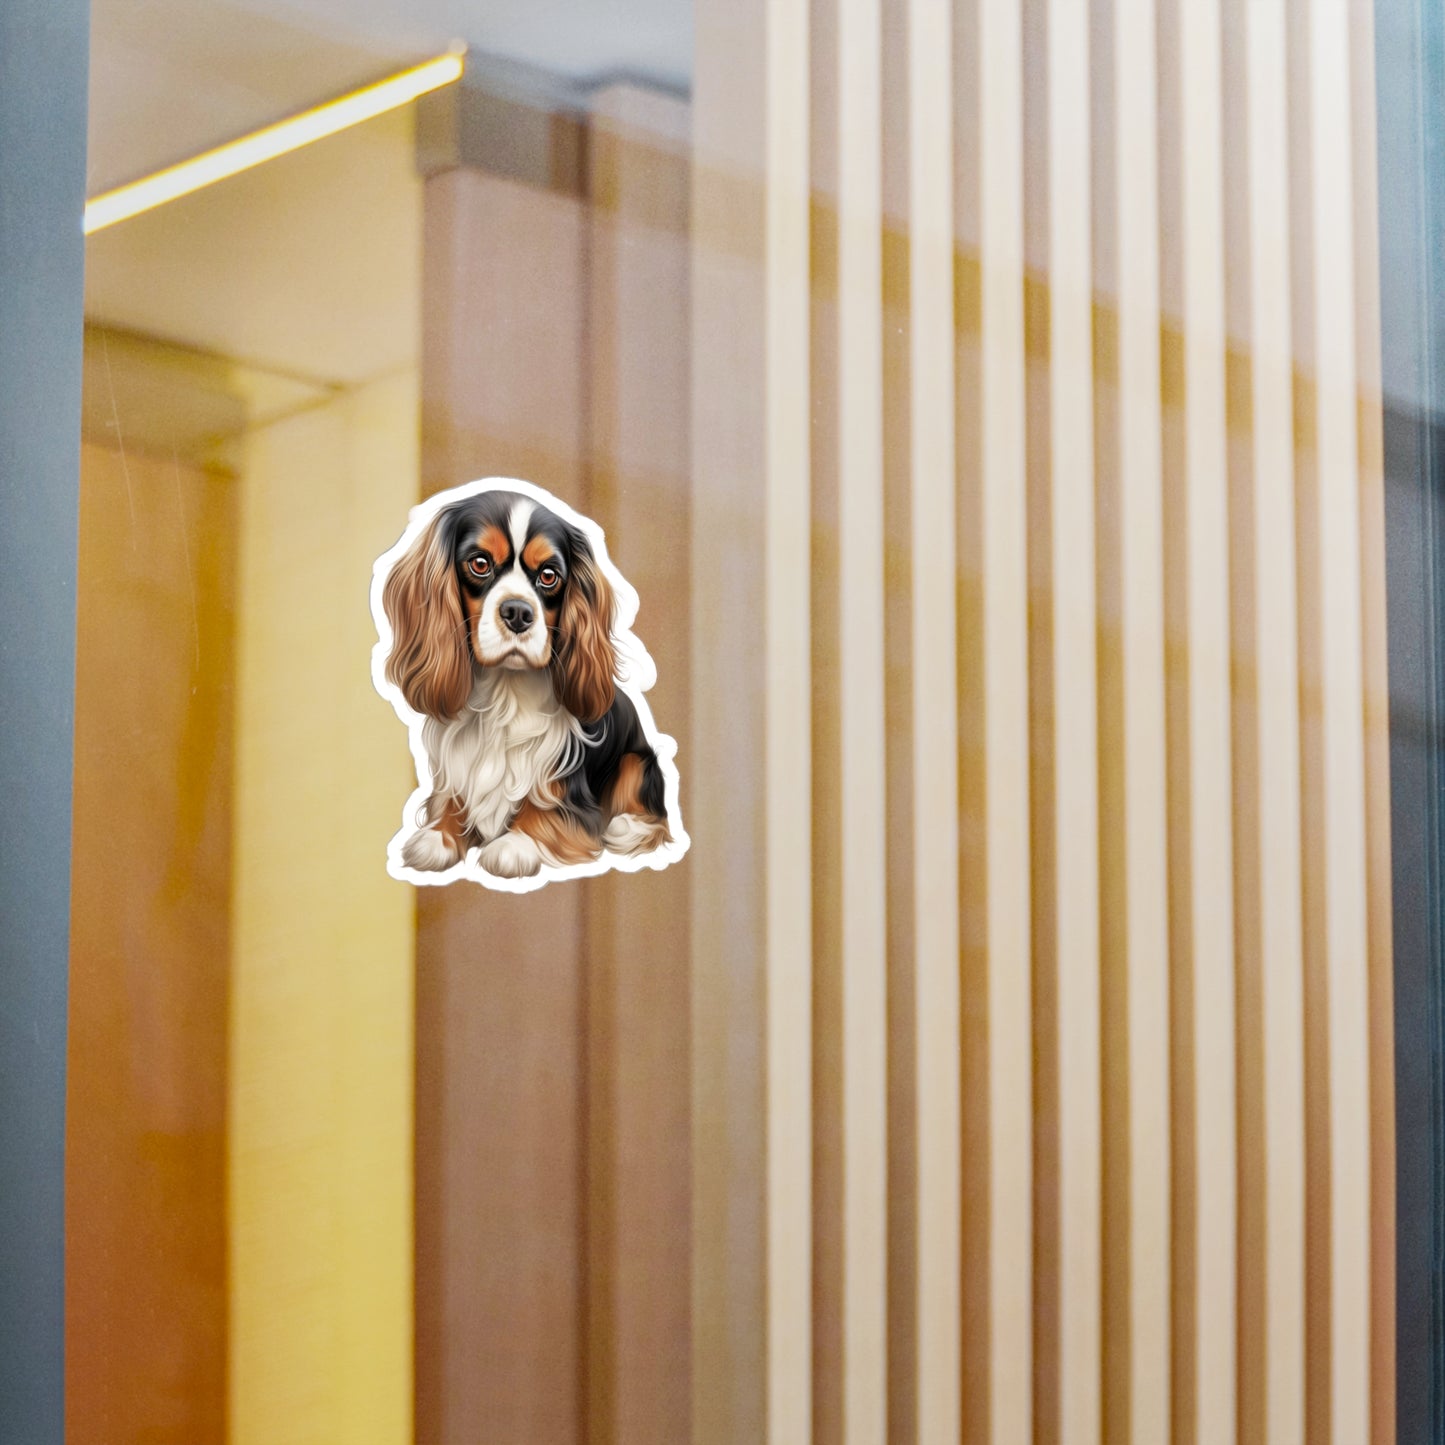 Cavalier King Charles Spaniel Sticker - Vinyl Dog Decals